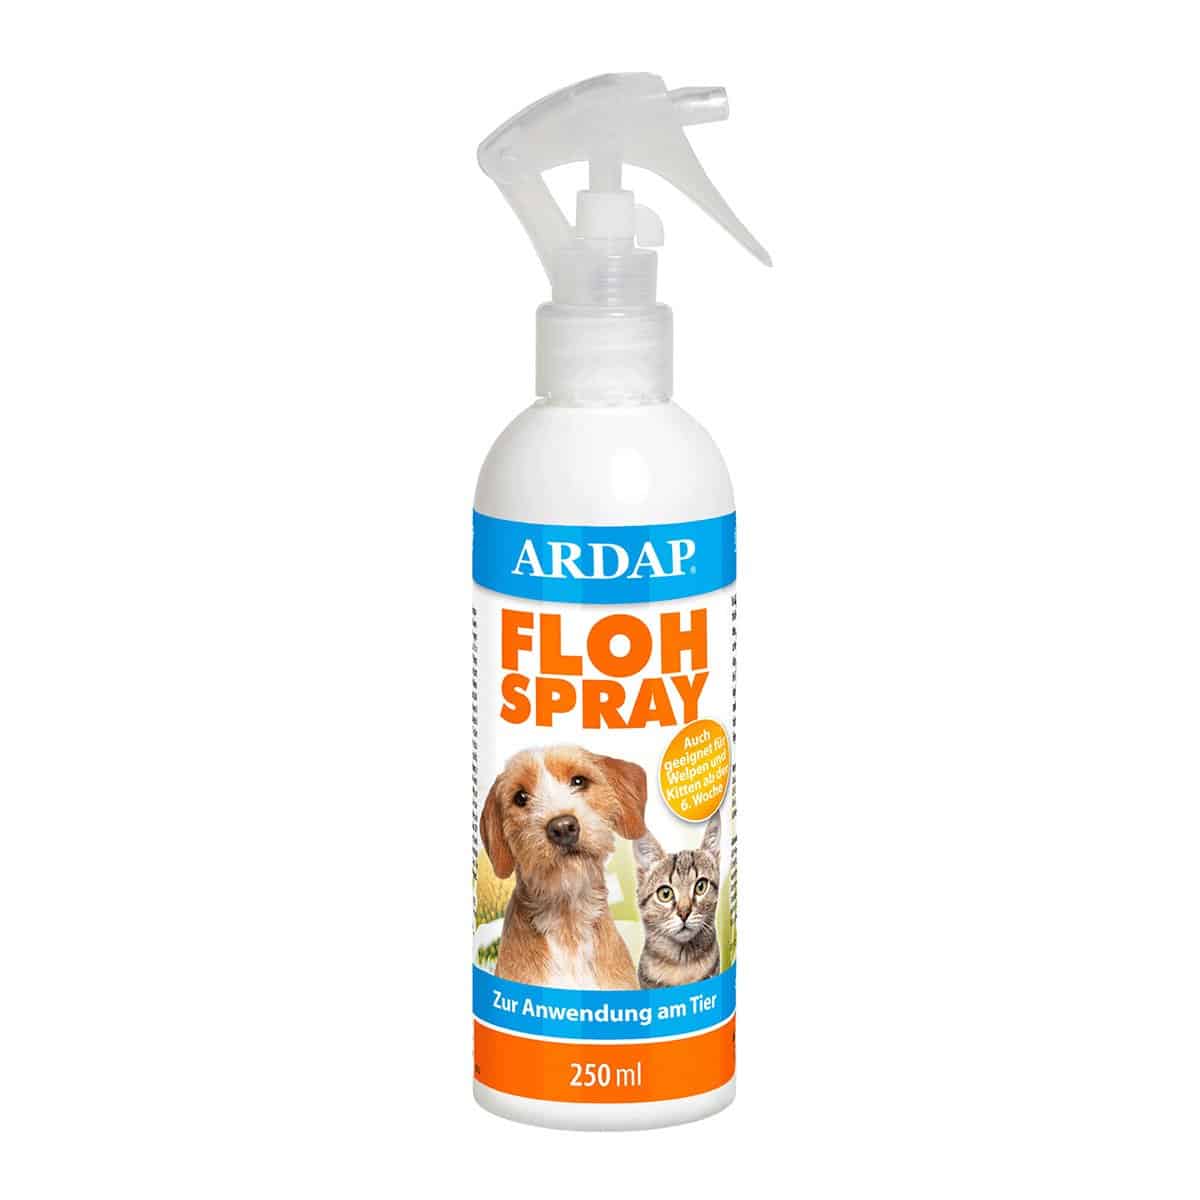 ARDAP Flohspray zur Anwendung am Tier 250ml